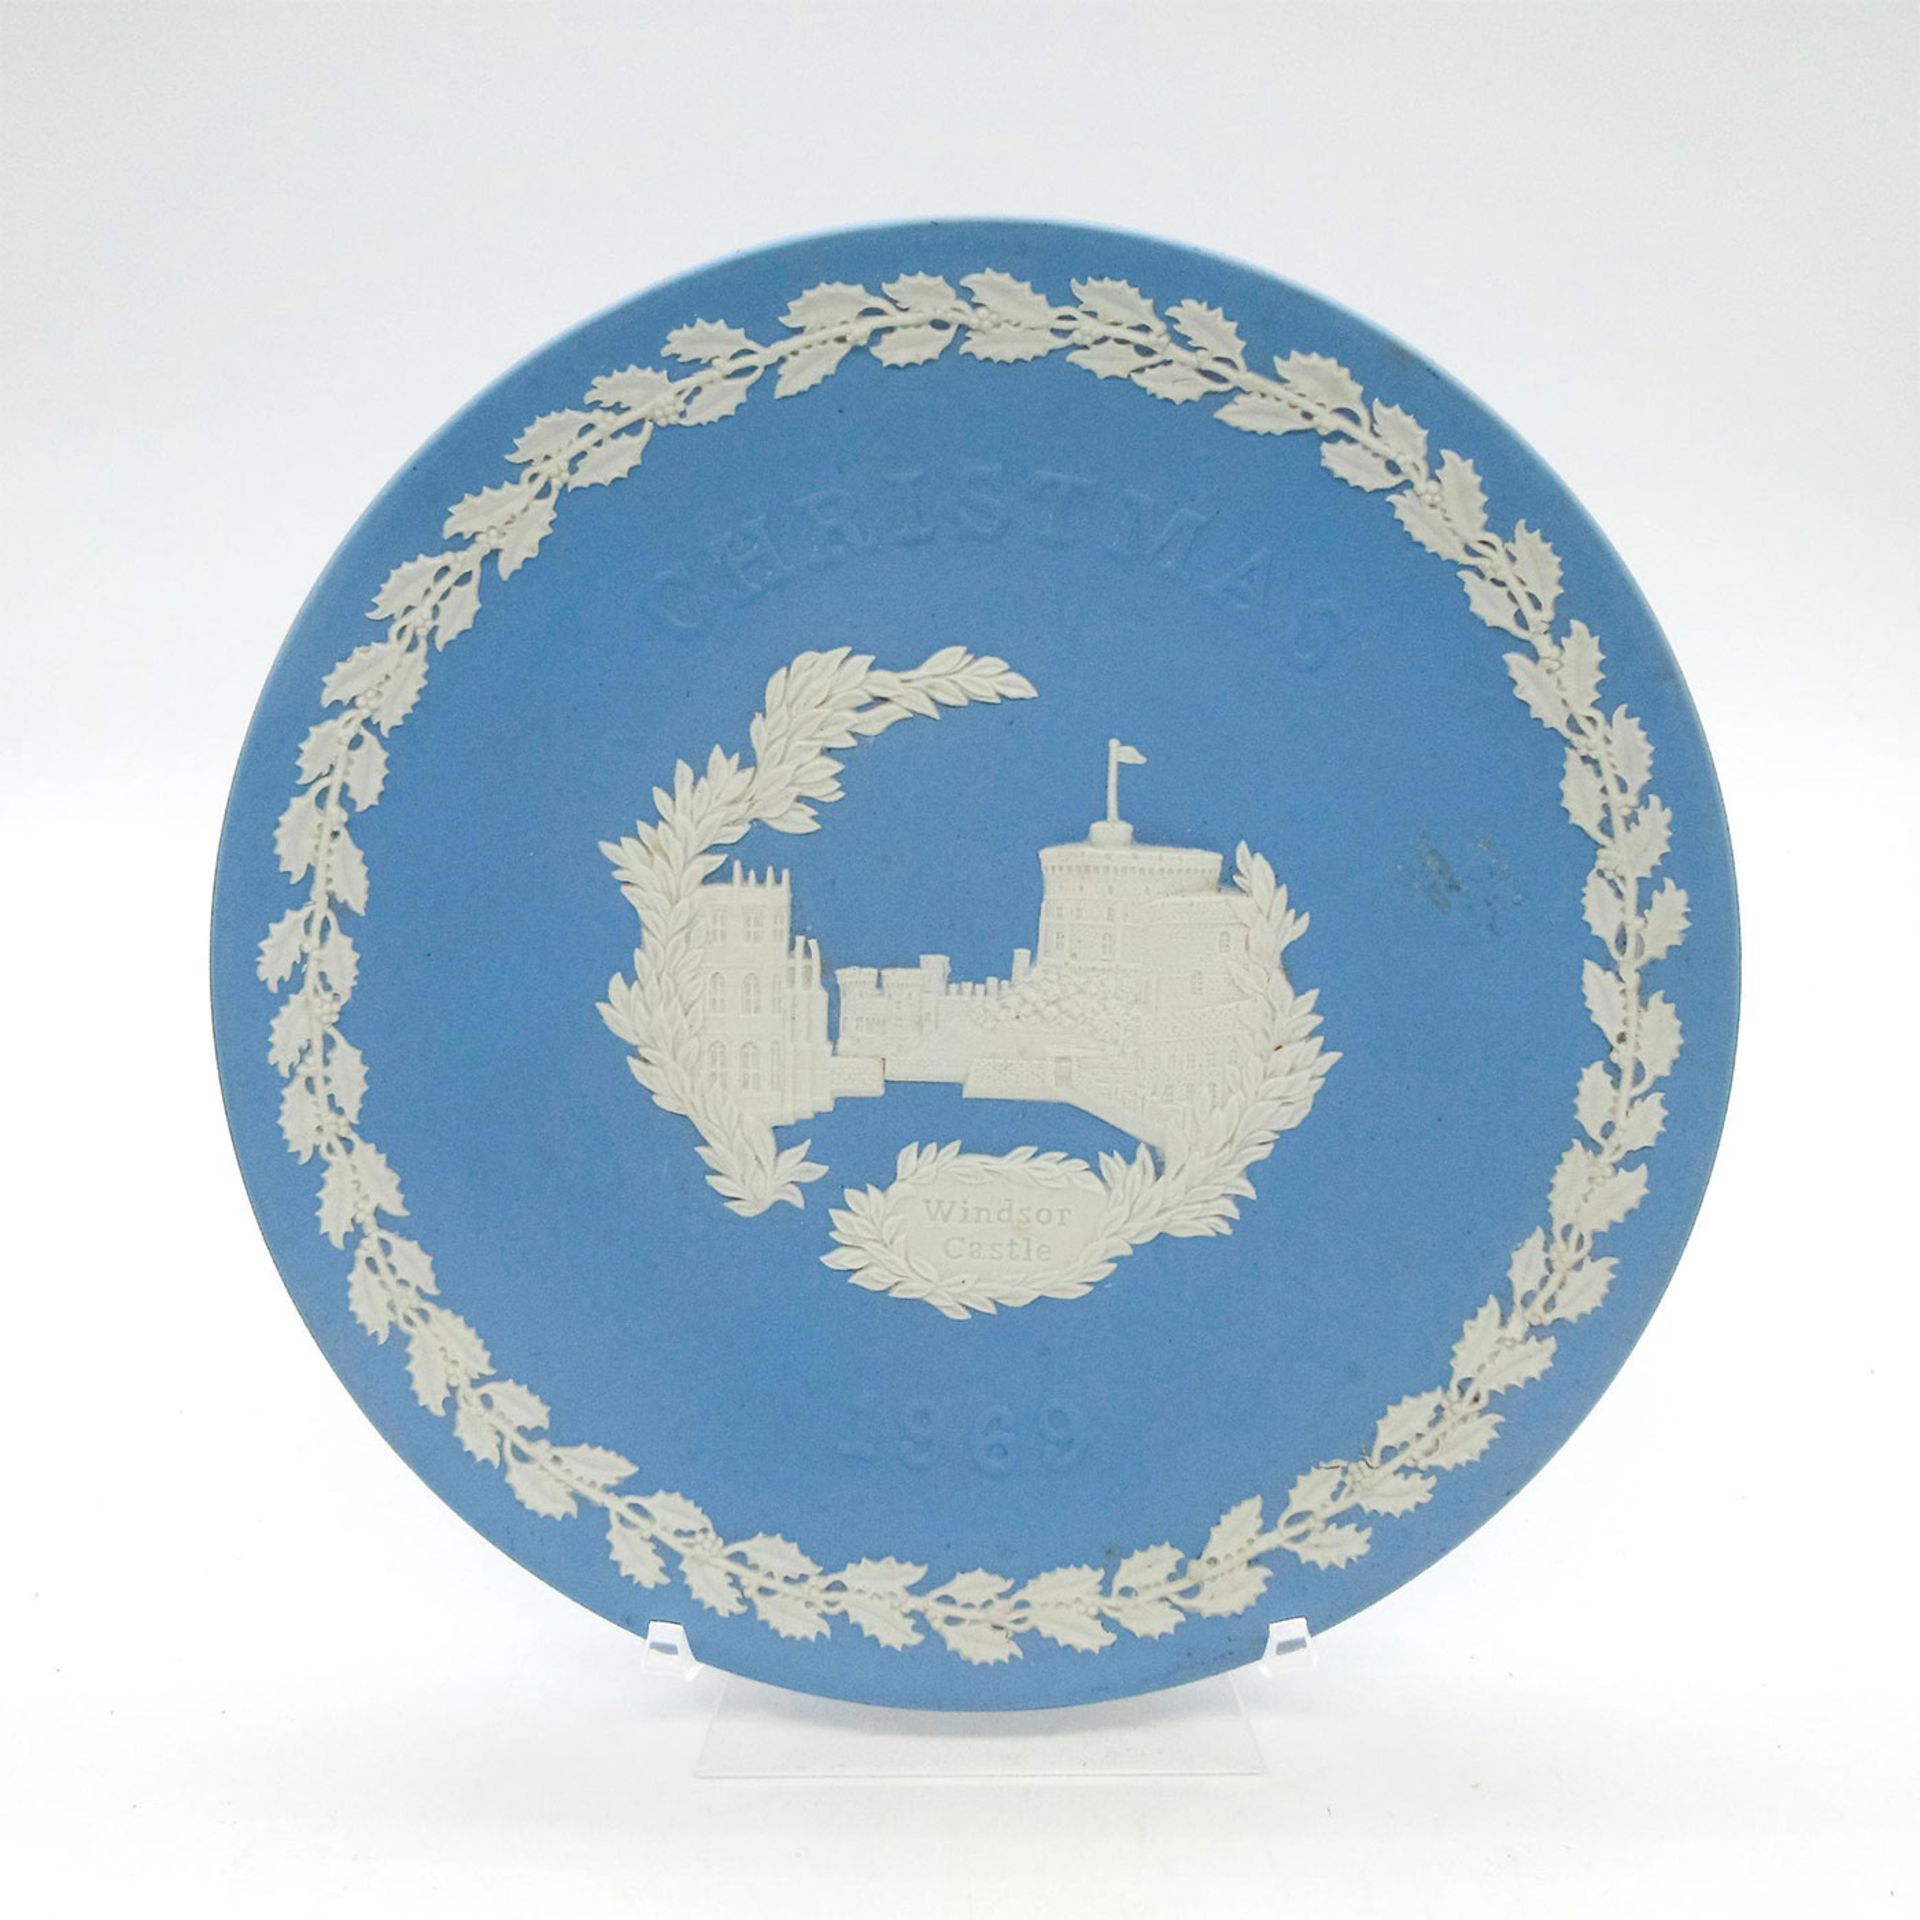 Vintage Wedgwood Blue Jasperware Plate, Windsor Castle